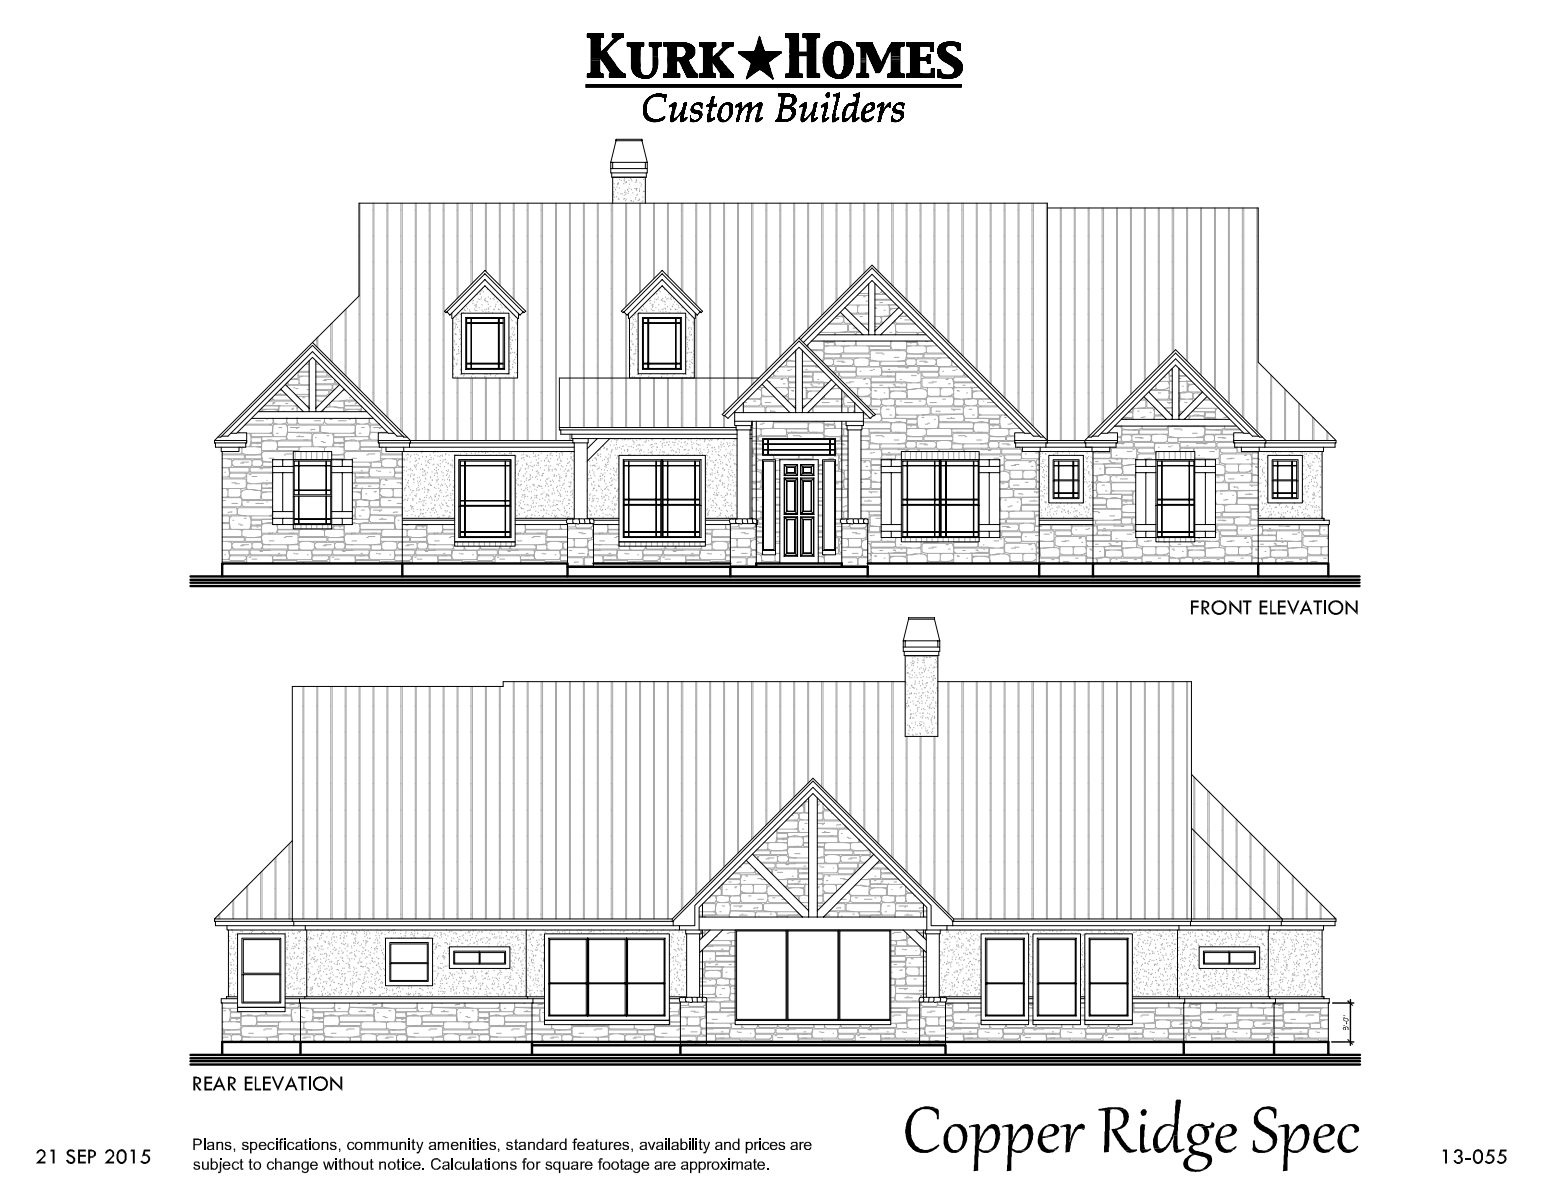 The Copper Ridge Model - Home Plan Design